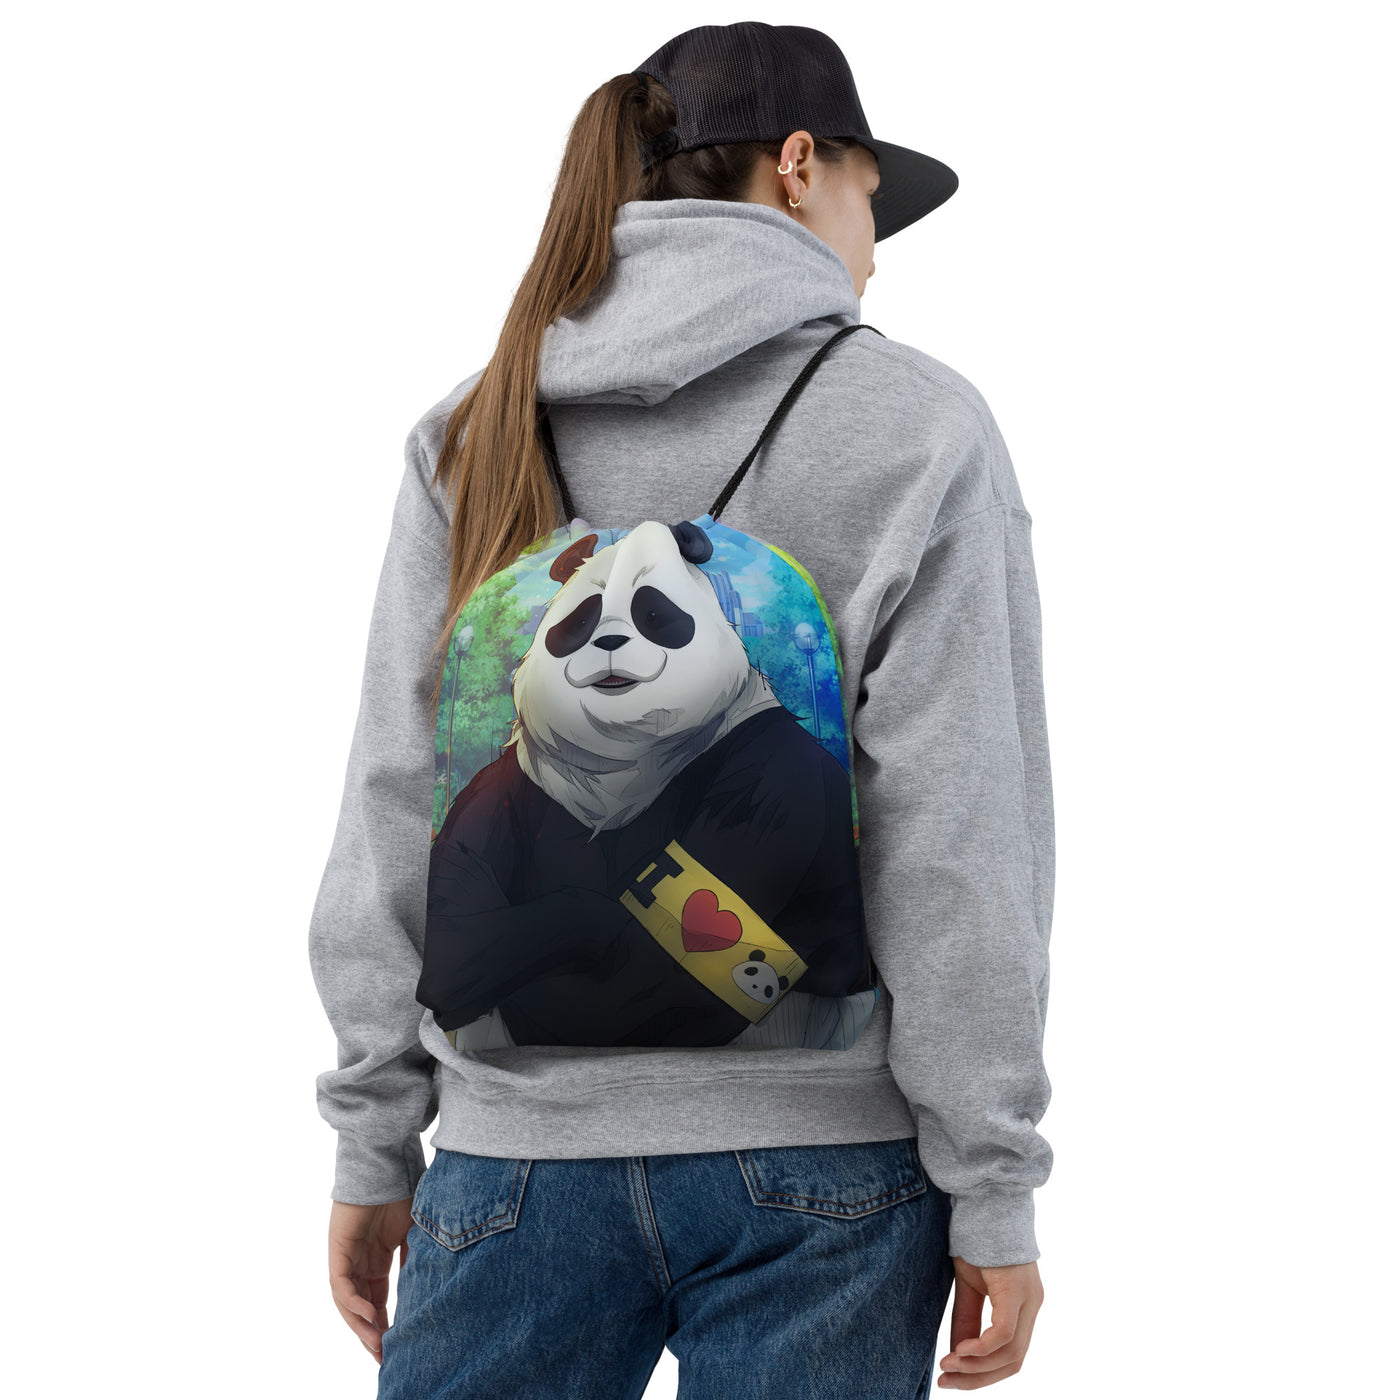 JJK Panda Drawstring Bag